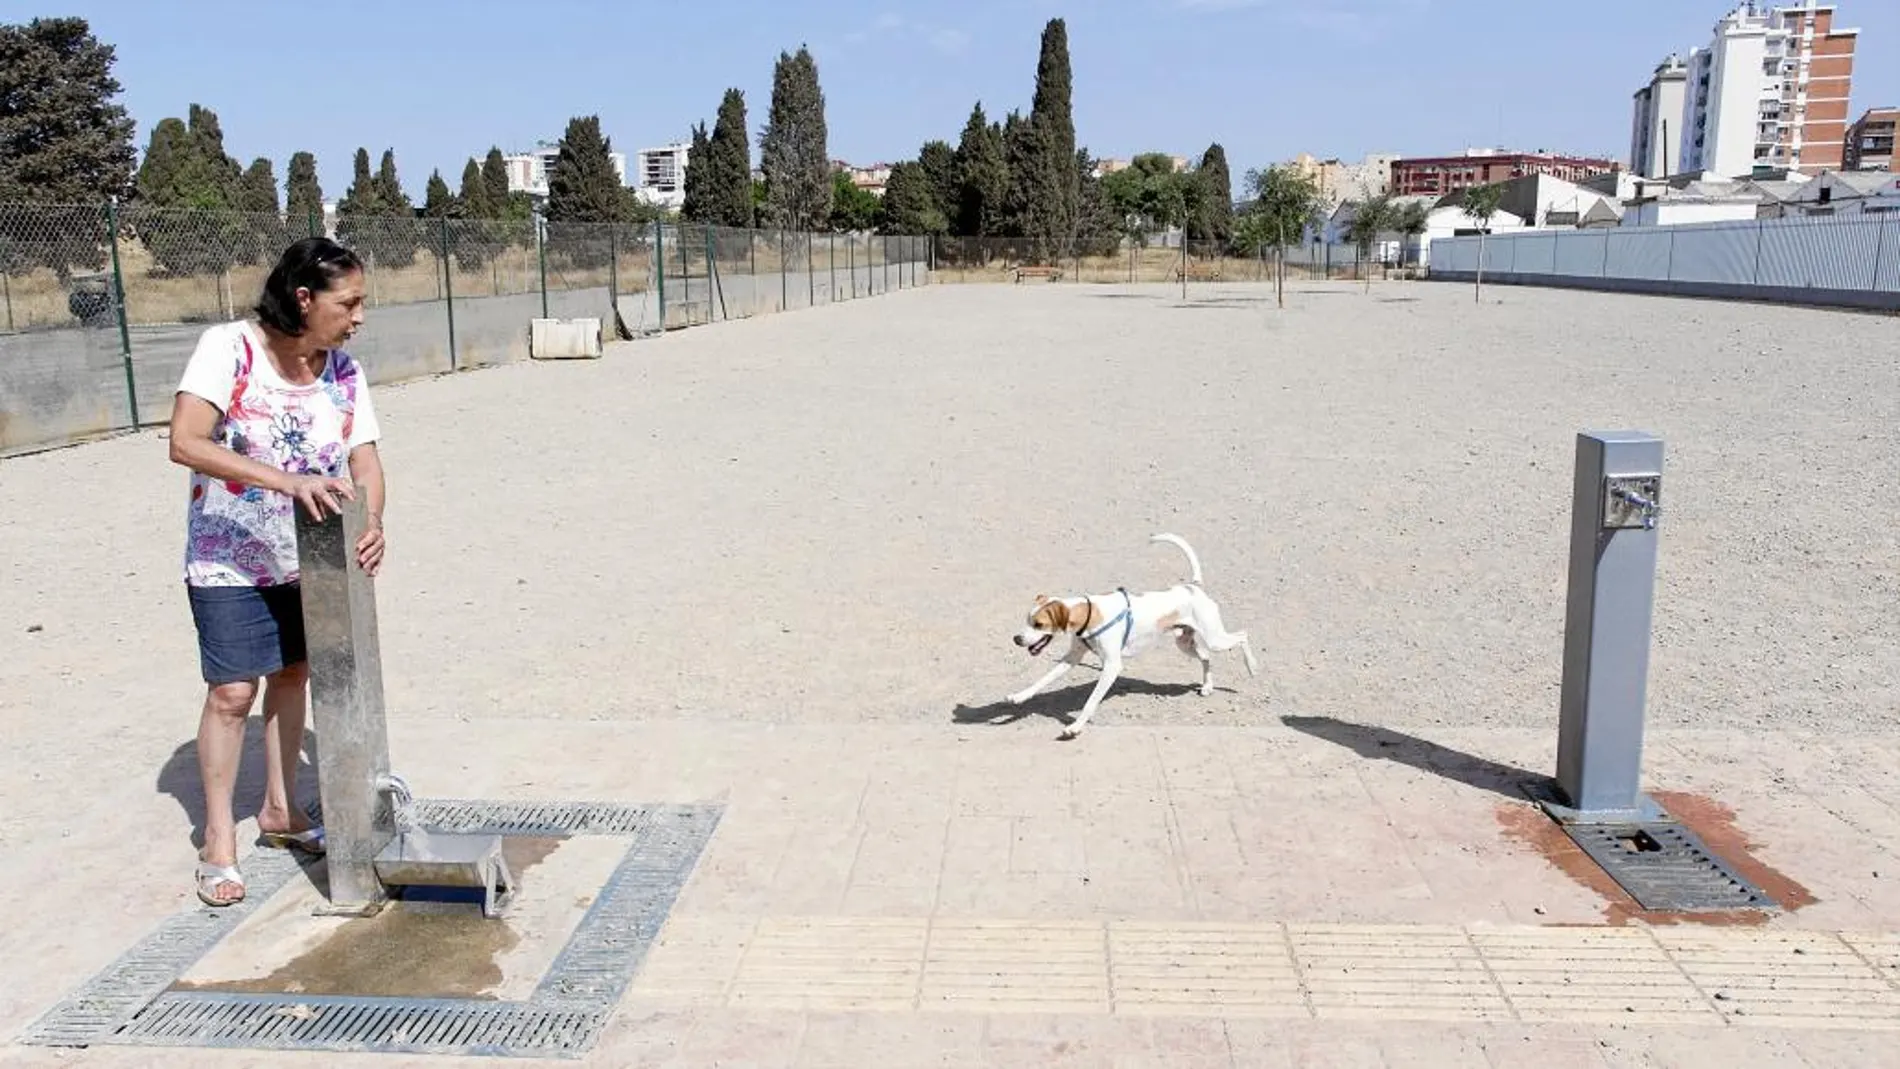 El Ayuntamiento de Málaga propone disminuir la zona de perros, quitando la parte que ocupa la fosa